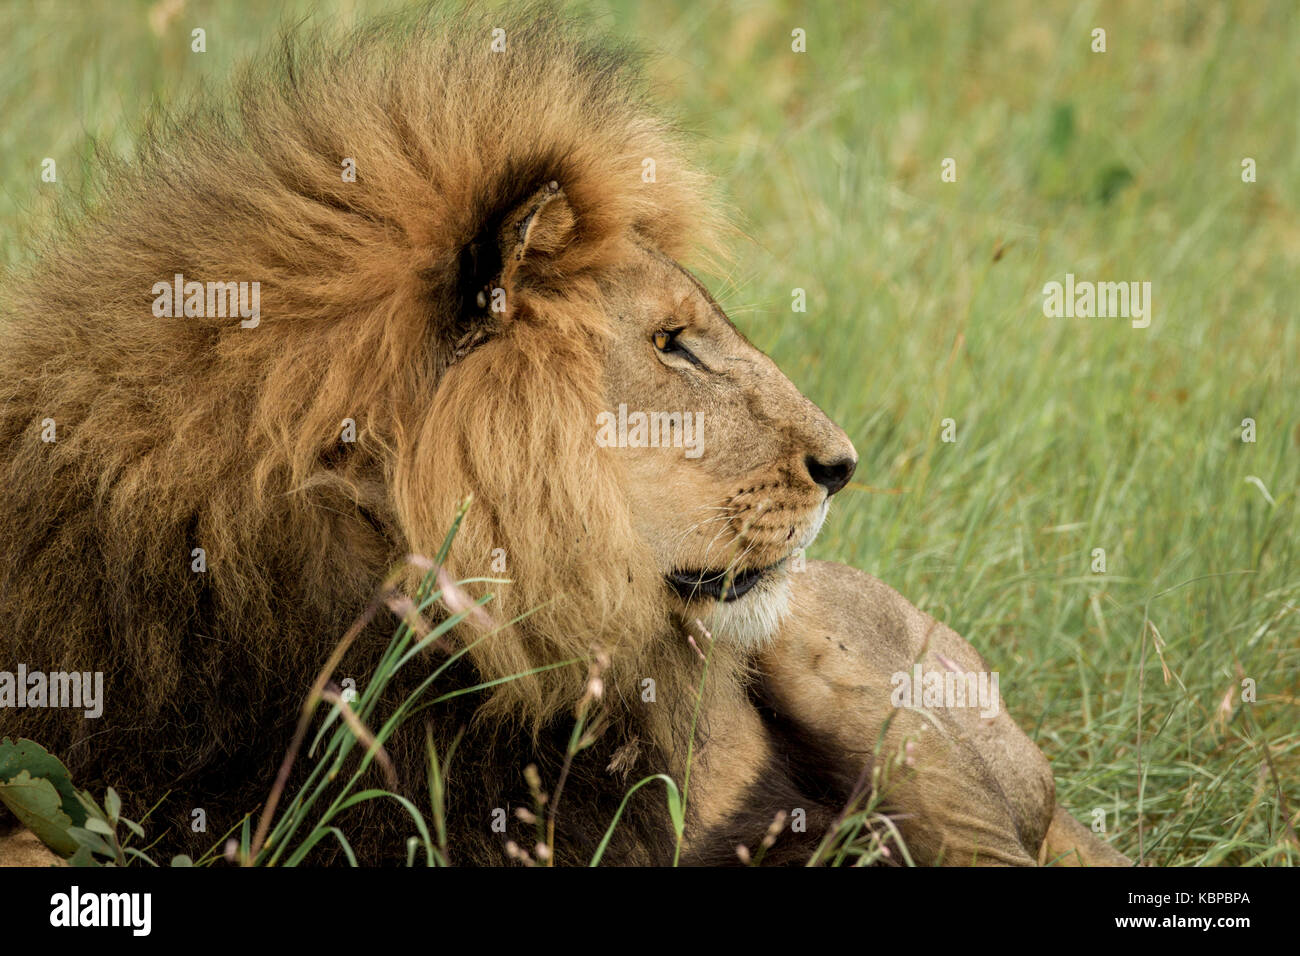 enorme león masculino tumbado en la hierba mientras mira atentamente a la derecha Foto de stock